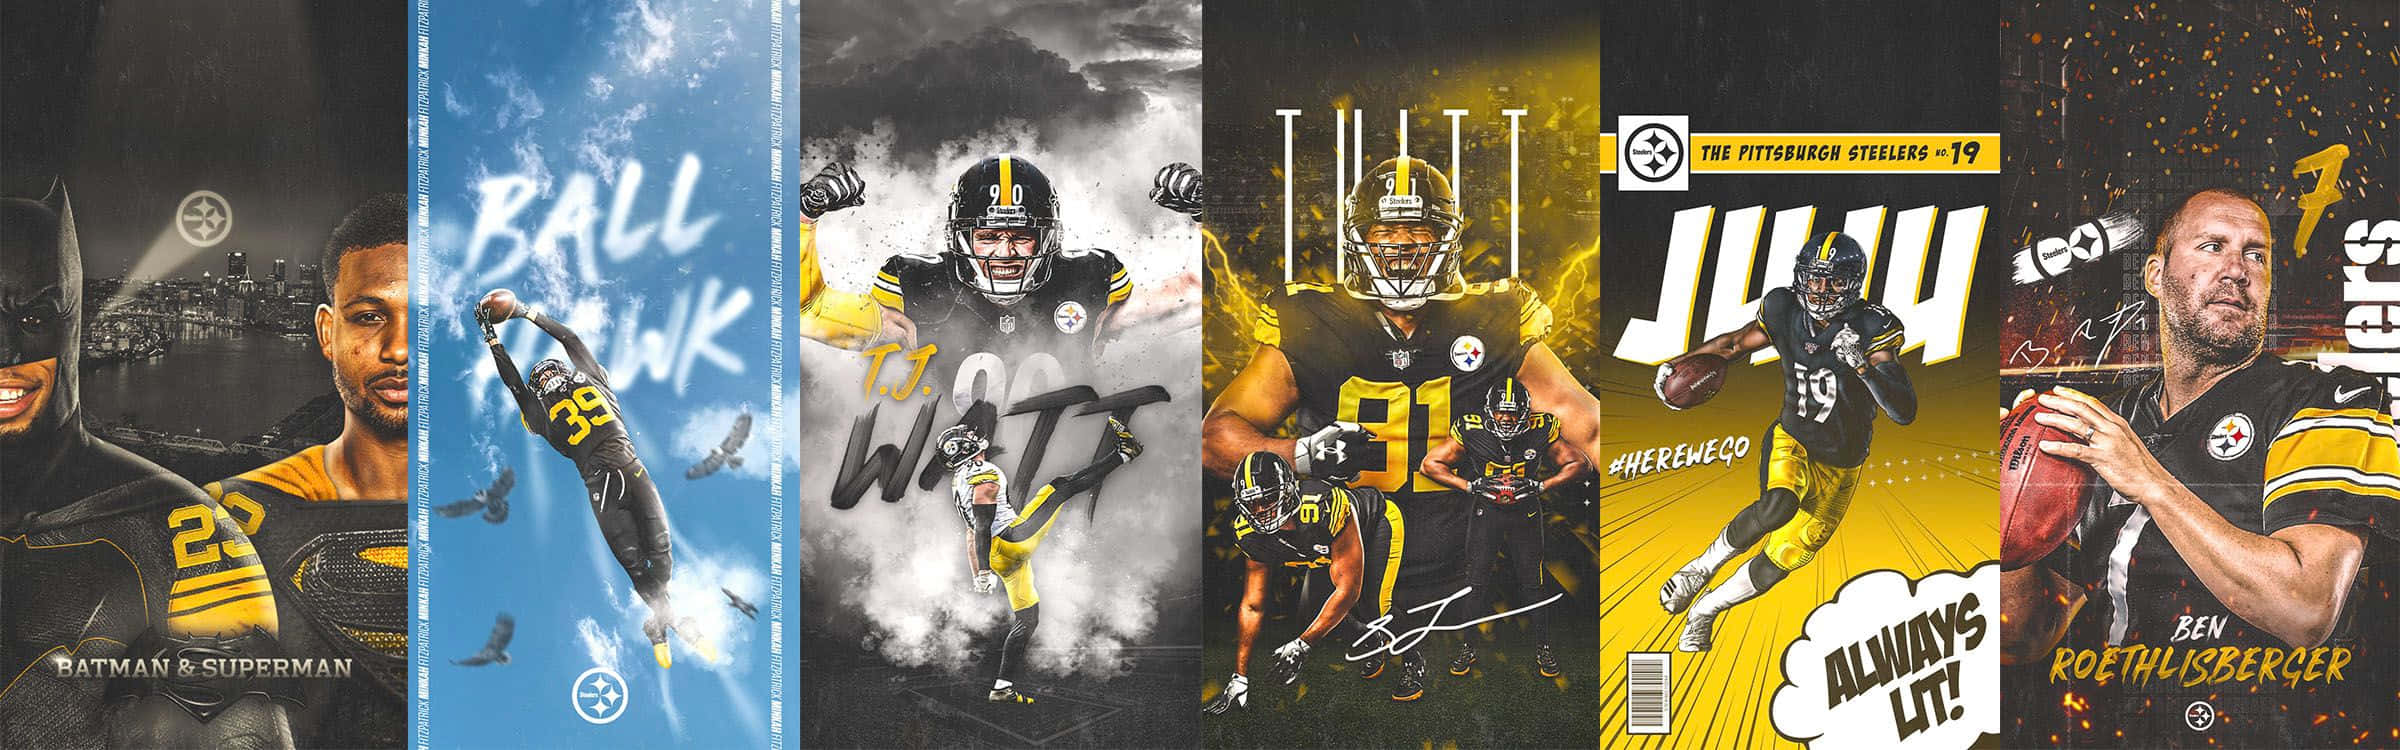 Collagedel Logotipo De Los Pittsburgh Steelers Fondo de pantalla